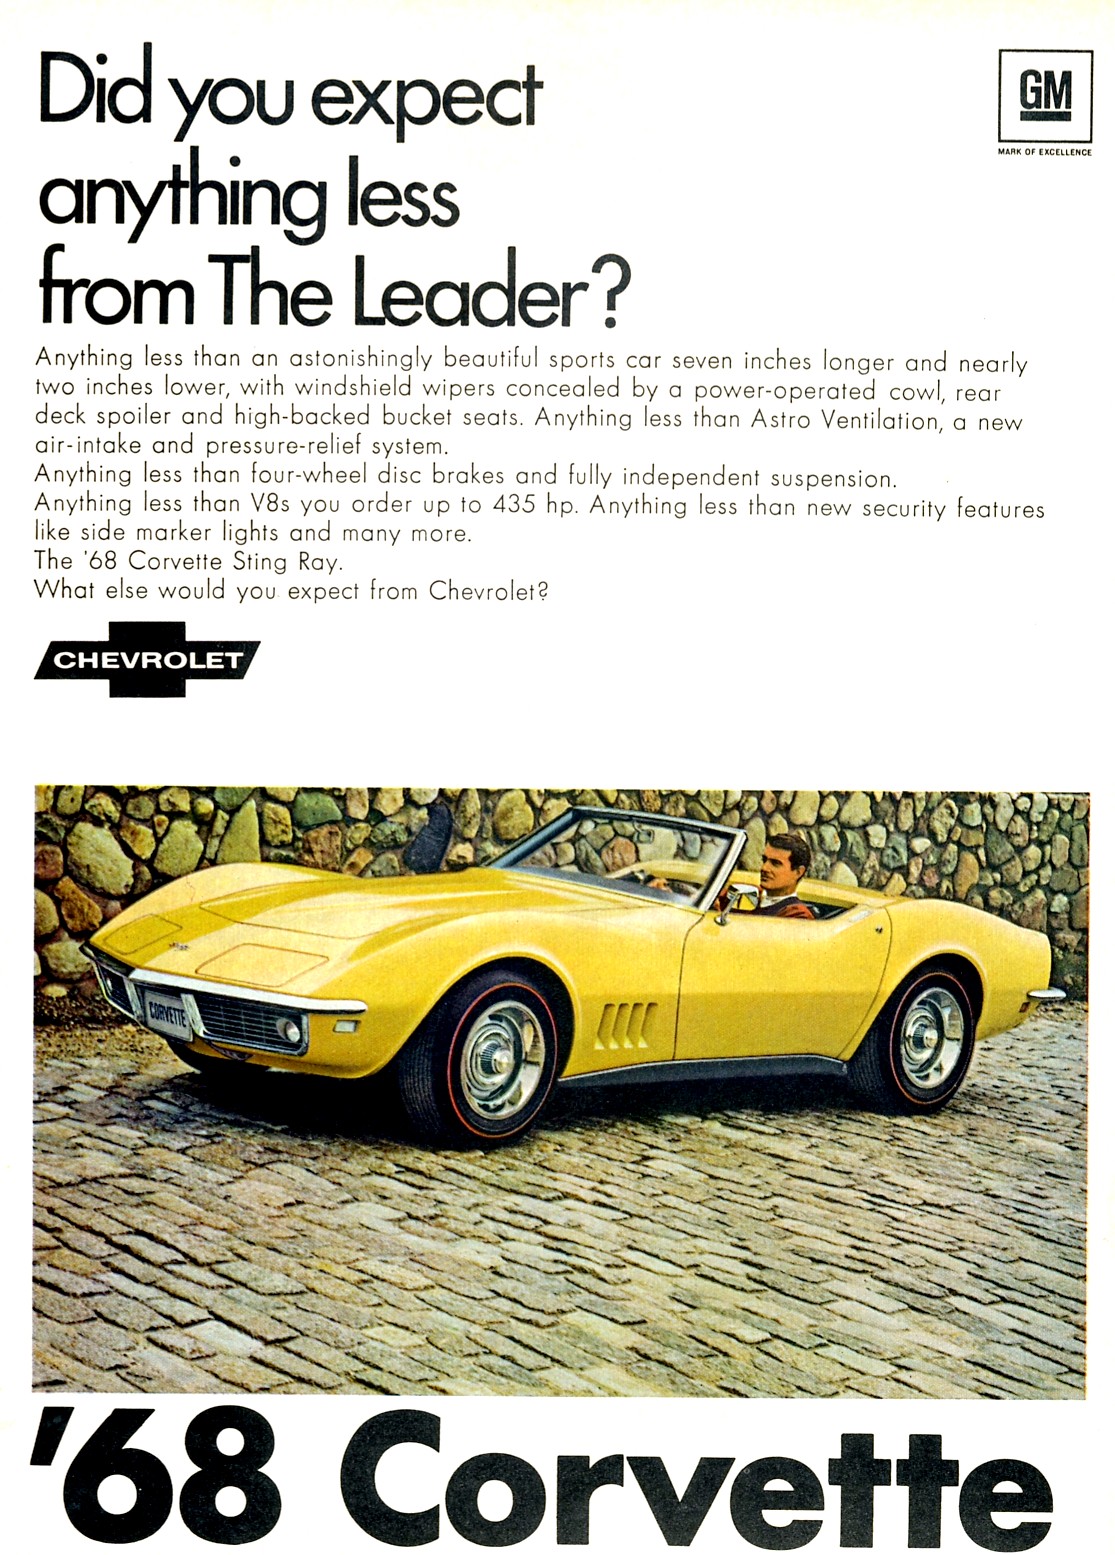 1968 Chevrolet Auto Advertising